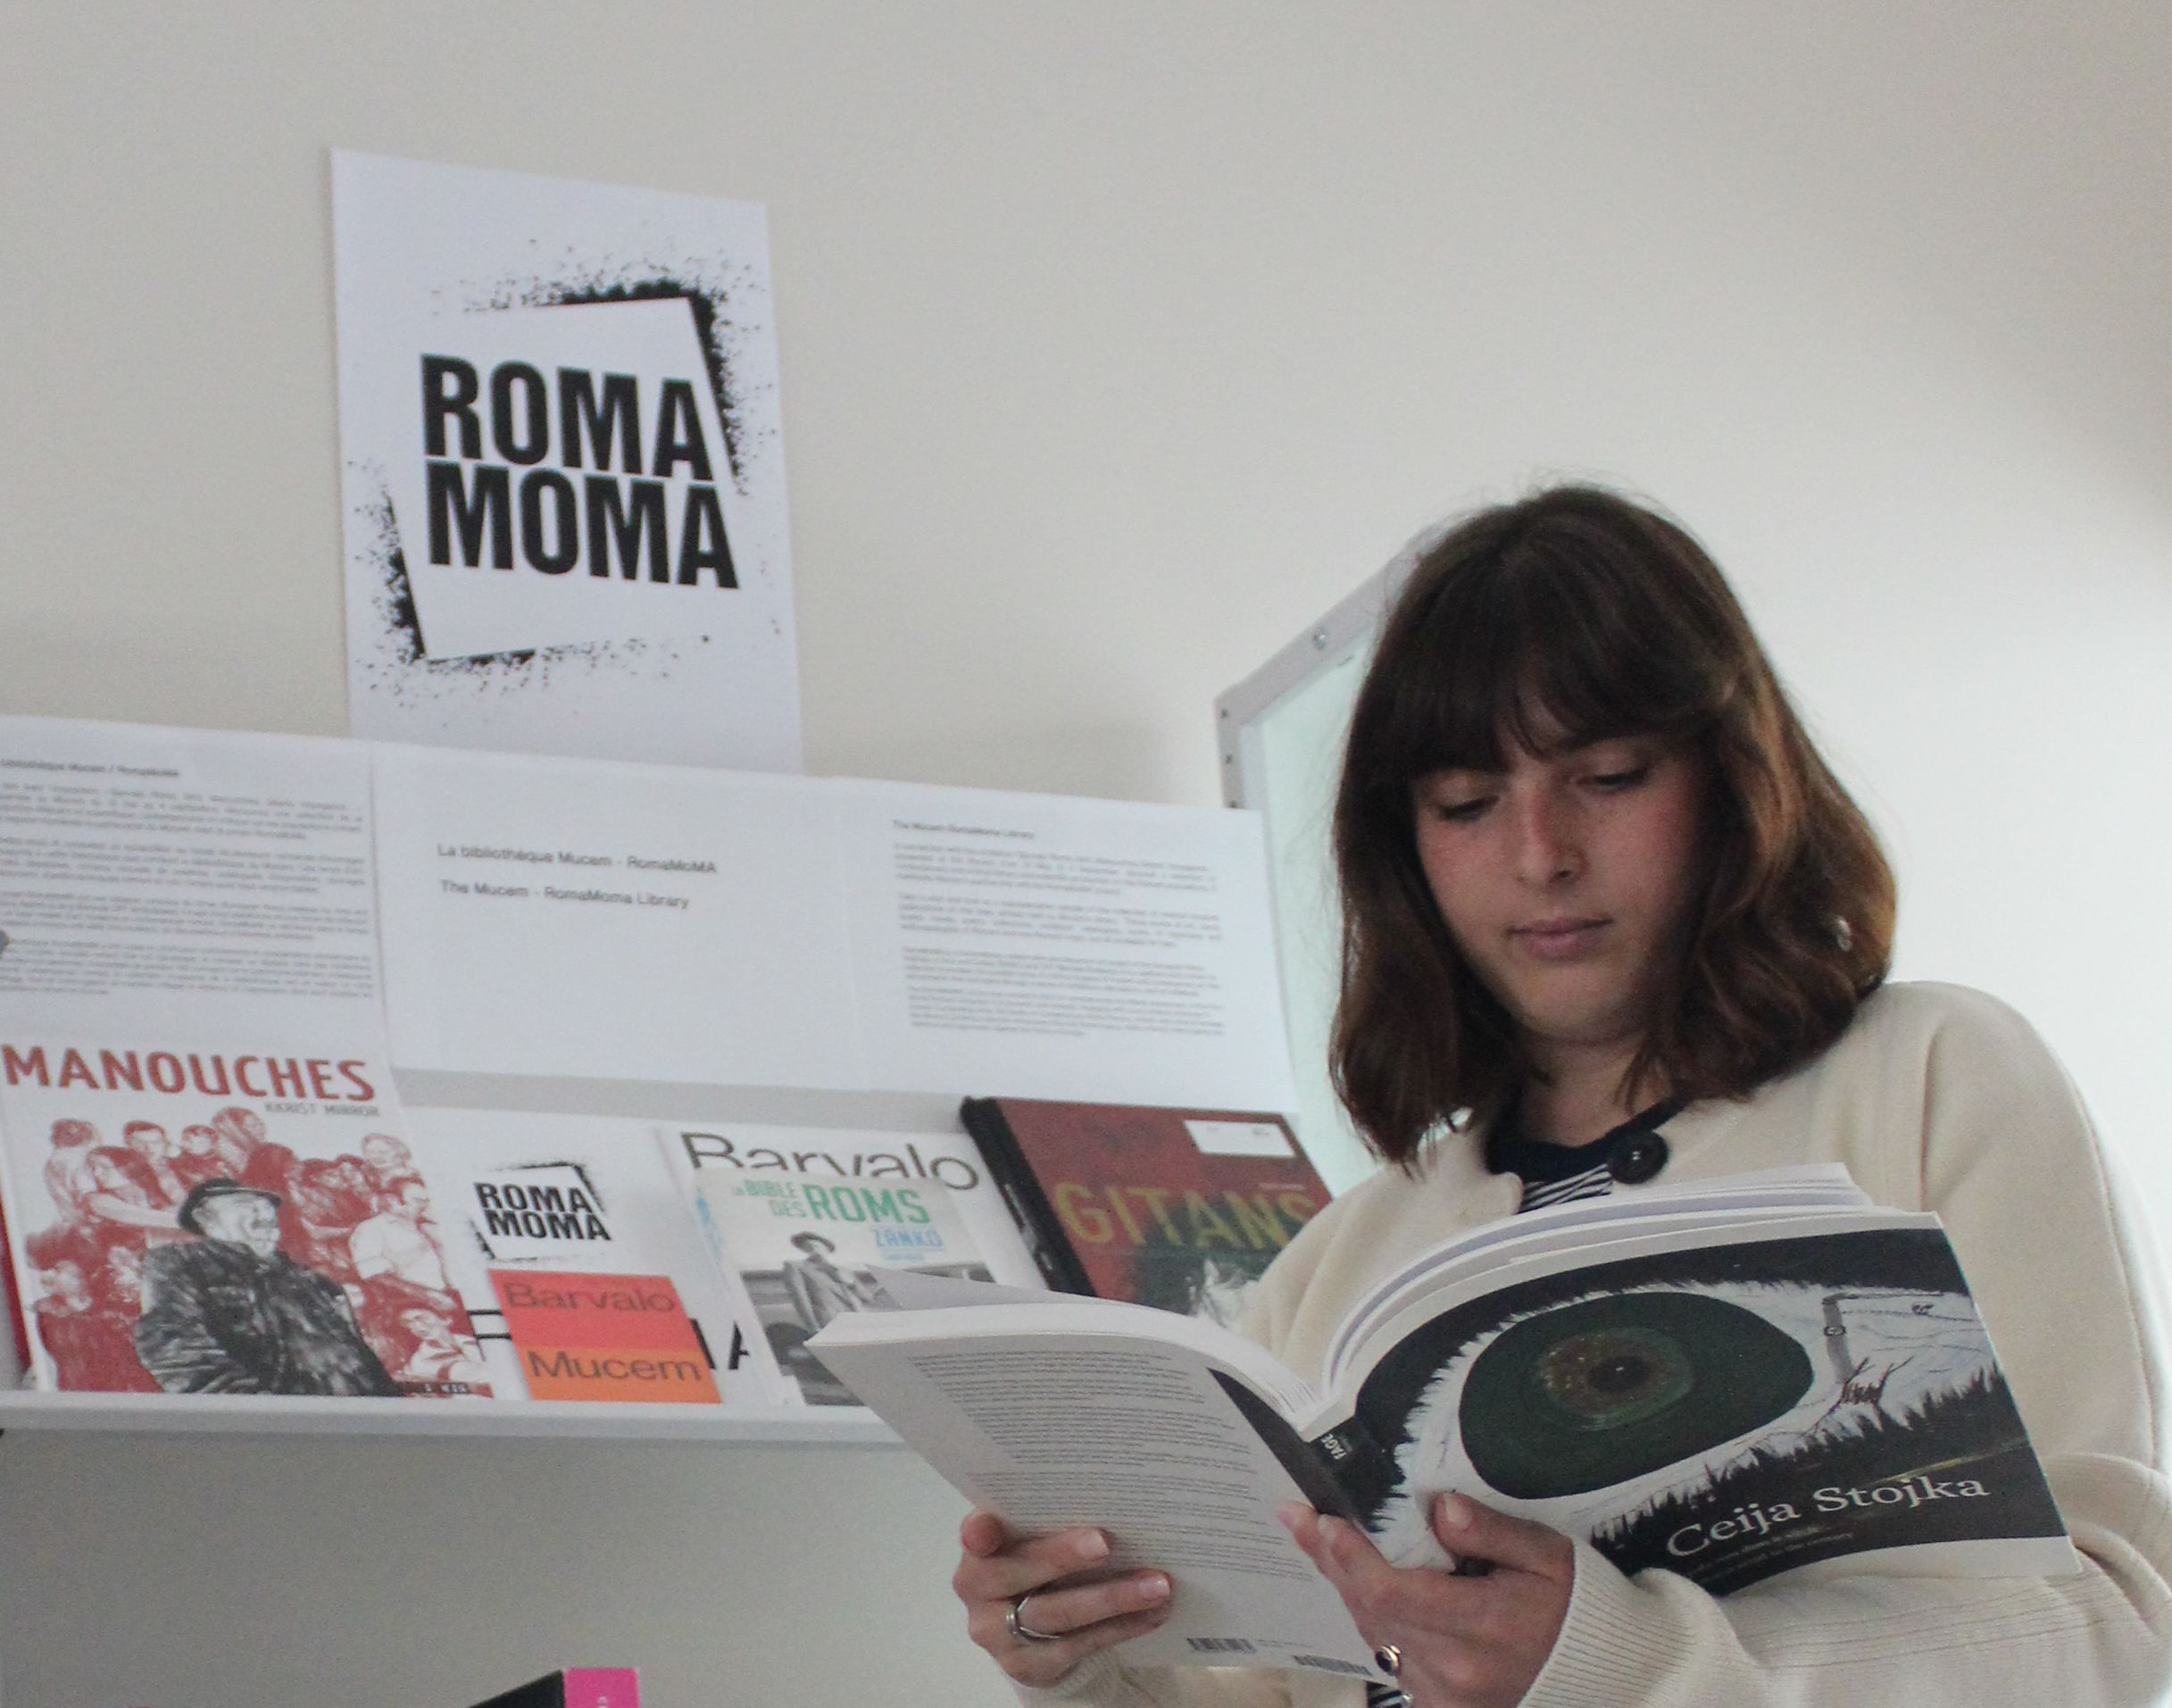 ROMA MoMA, Centre de conservation et de ressources. Photo Mucem / Hélène Taam